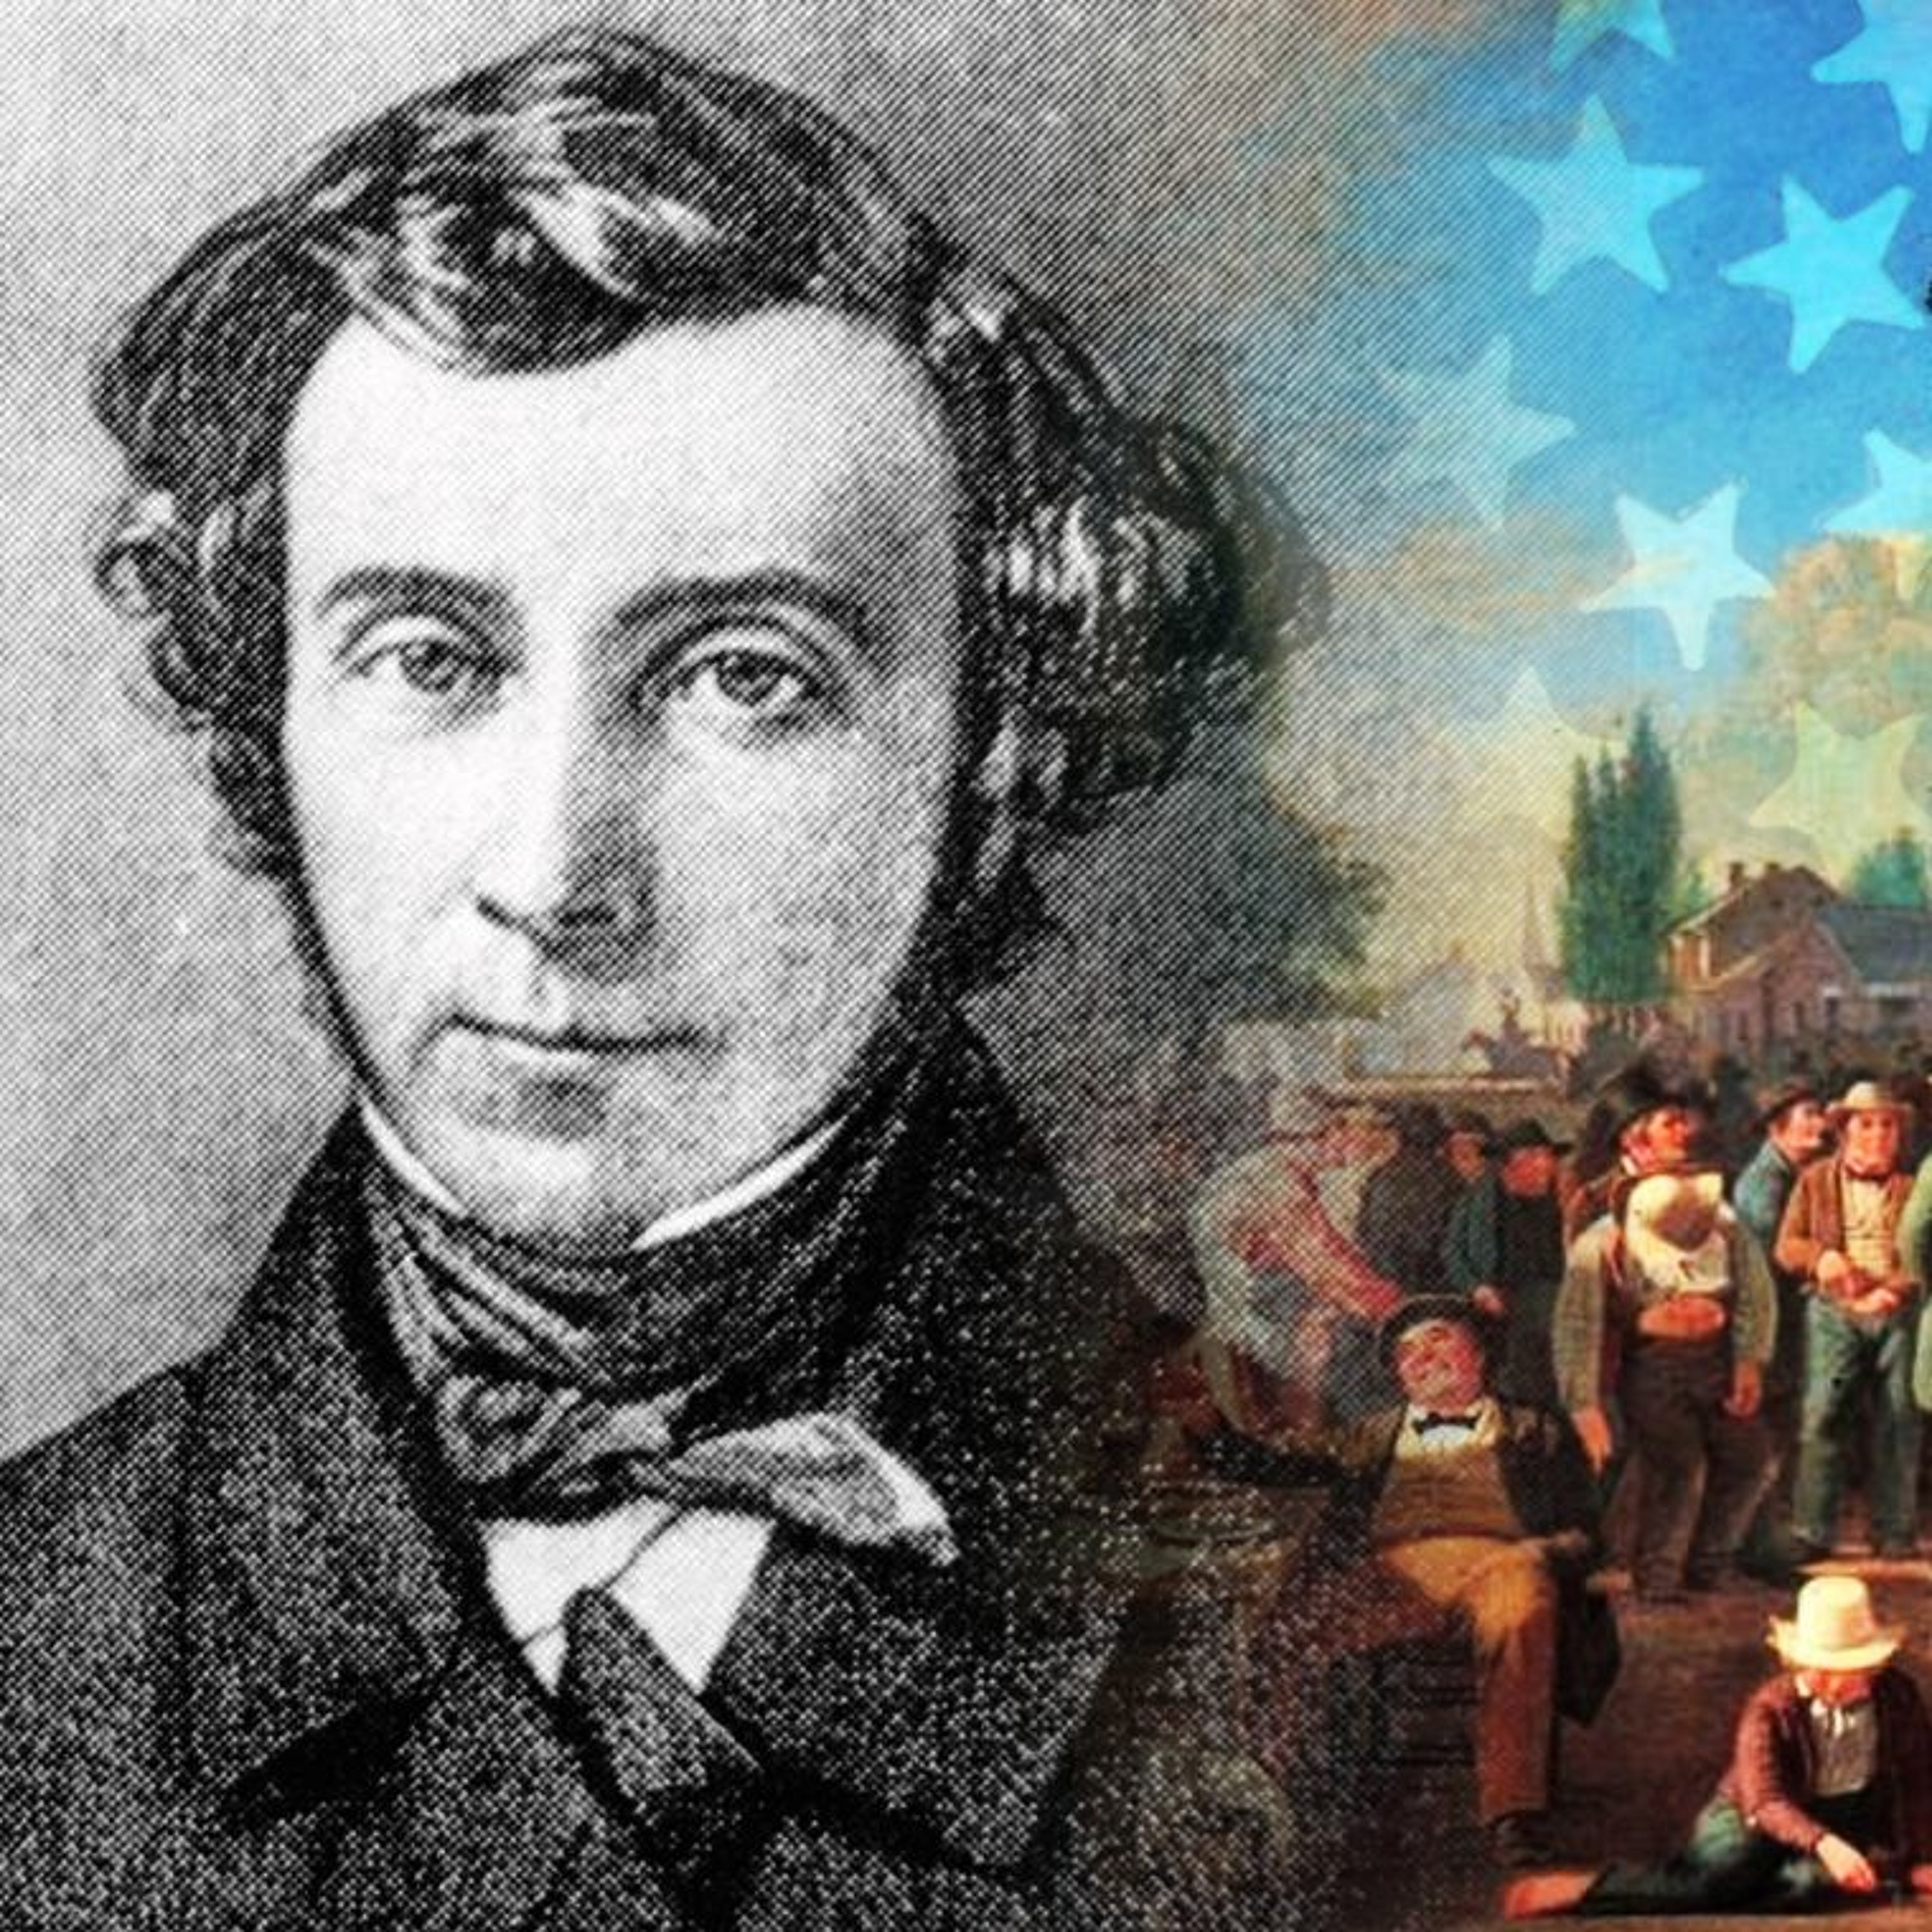 Hillsdale Dialogues 07-16-21: Alexis de Tocqueville’s Democracy in America, Part 3